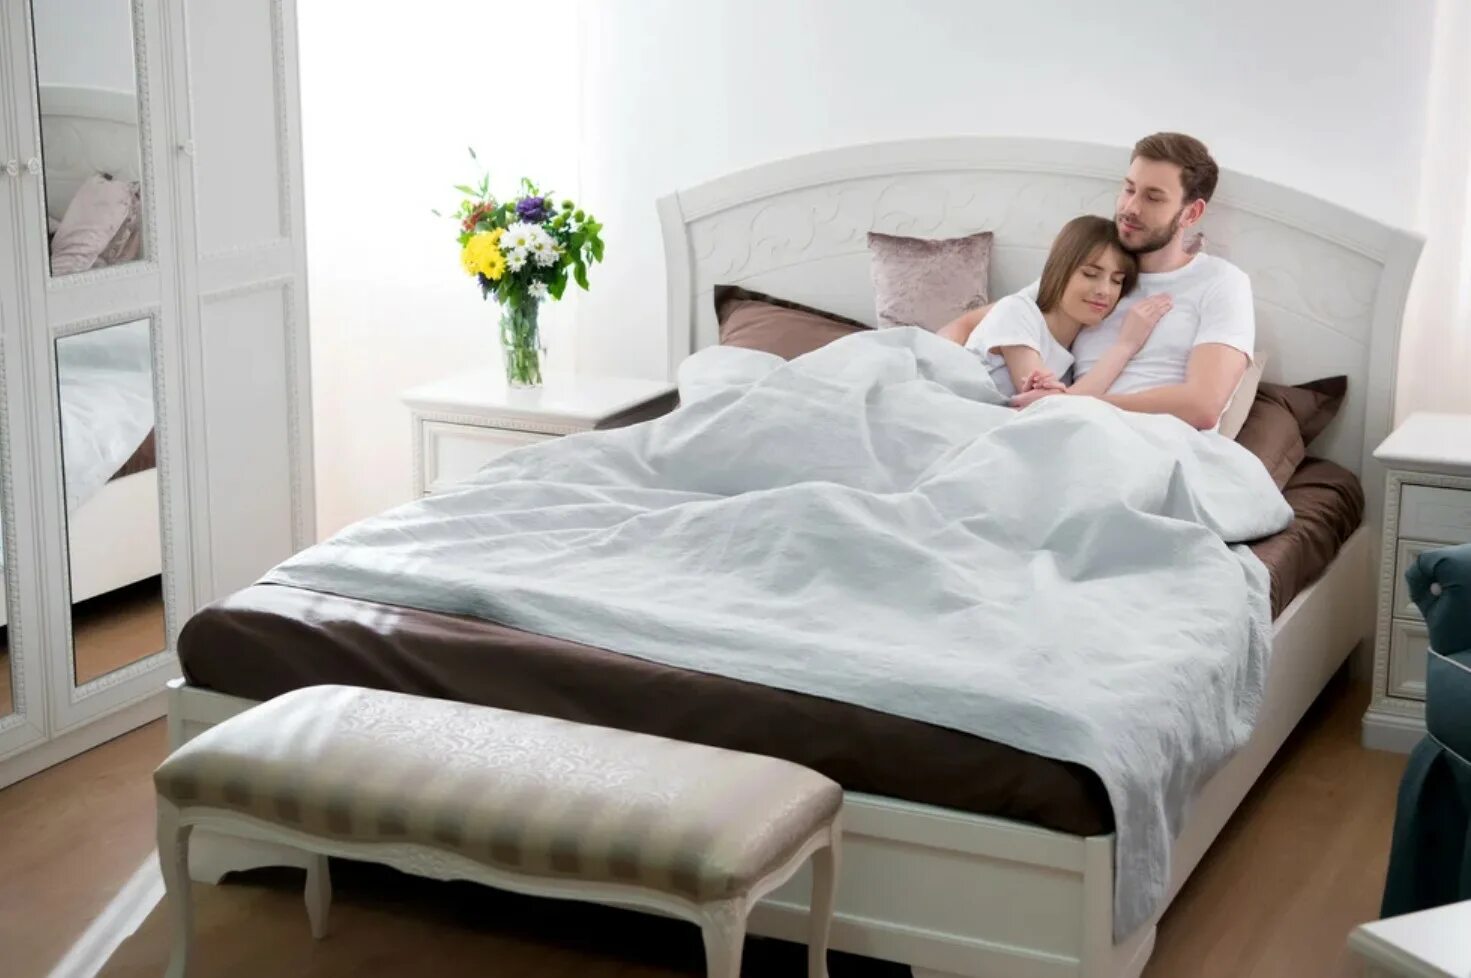 Семейная пара в спальне. Кровать в спальню. Семейная кровать. Маленькая двуспальная кровать. Супружеская кровать.